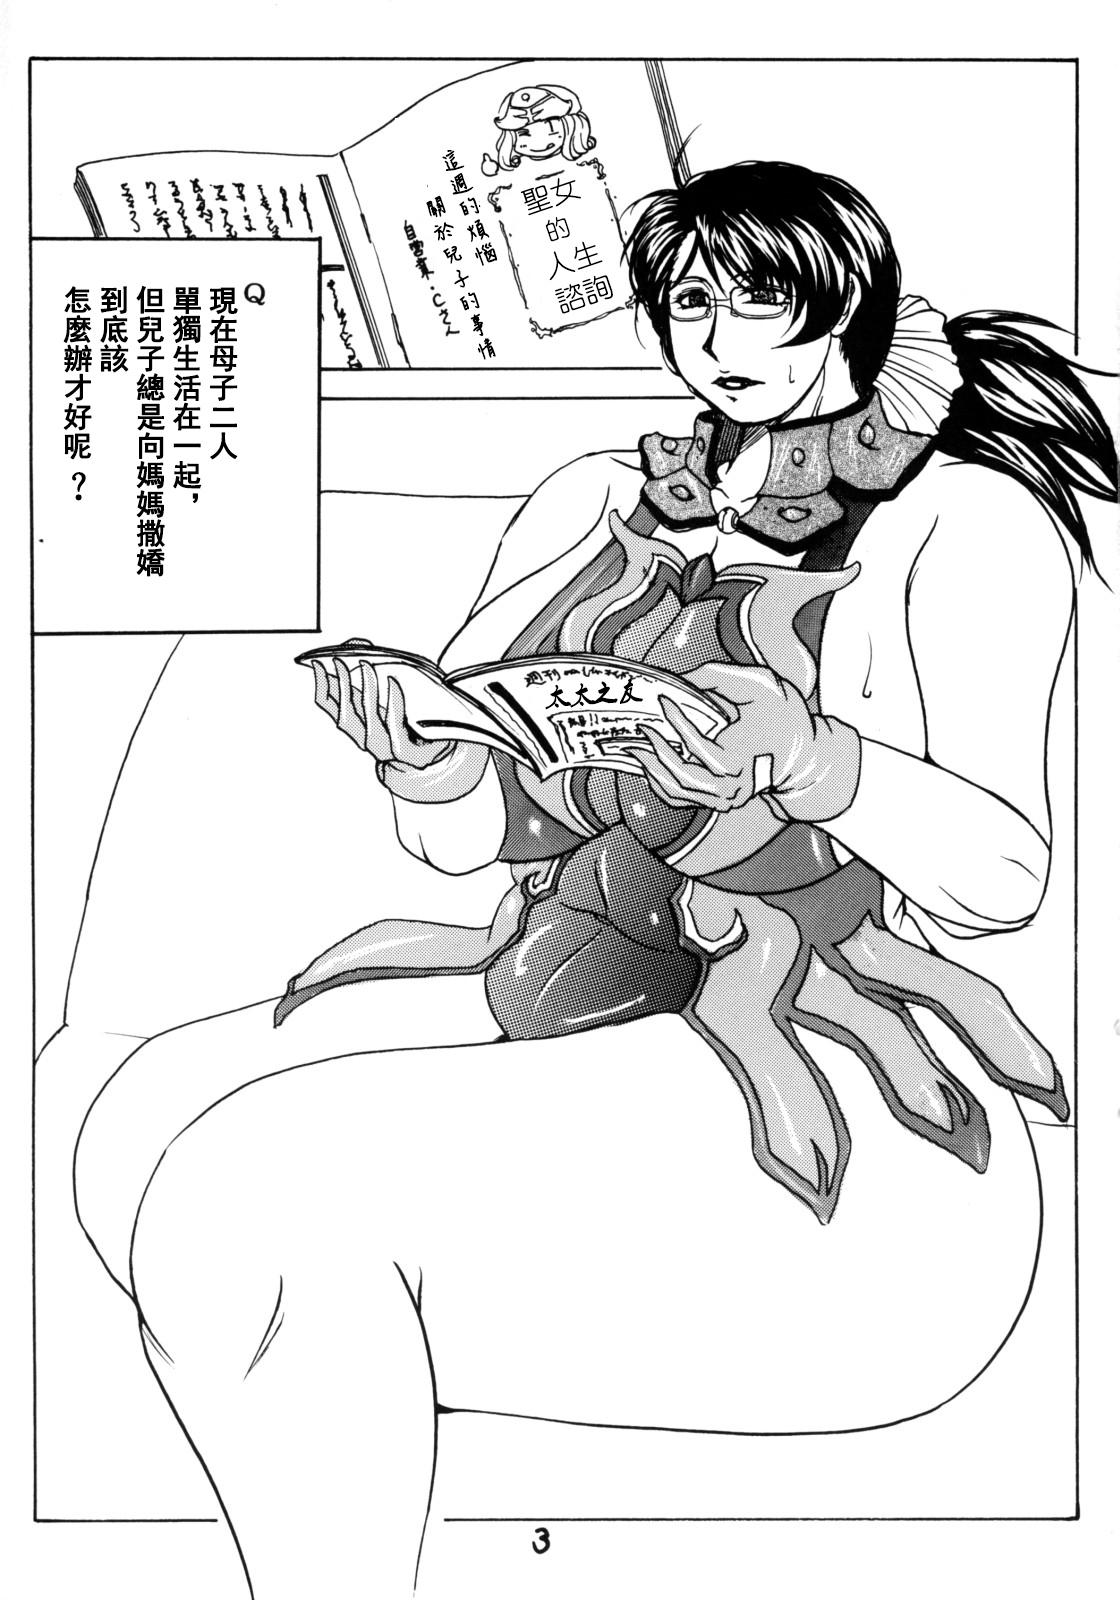 Rimming Fukafuka Okaa-san 2008 - Queens blade Celebrity Nudes - Page 3